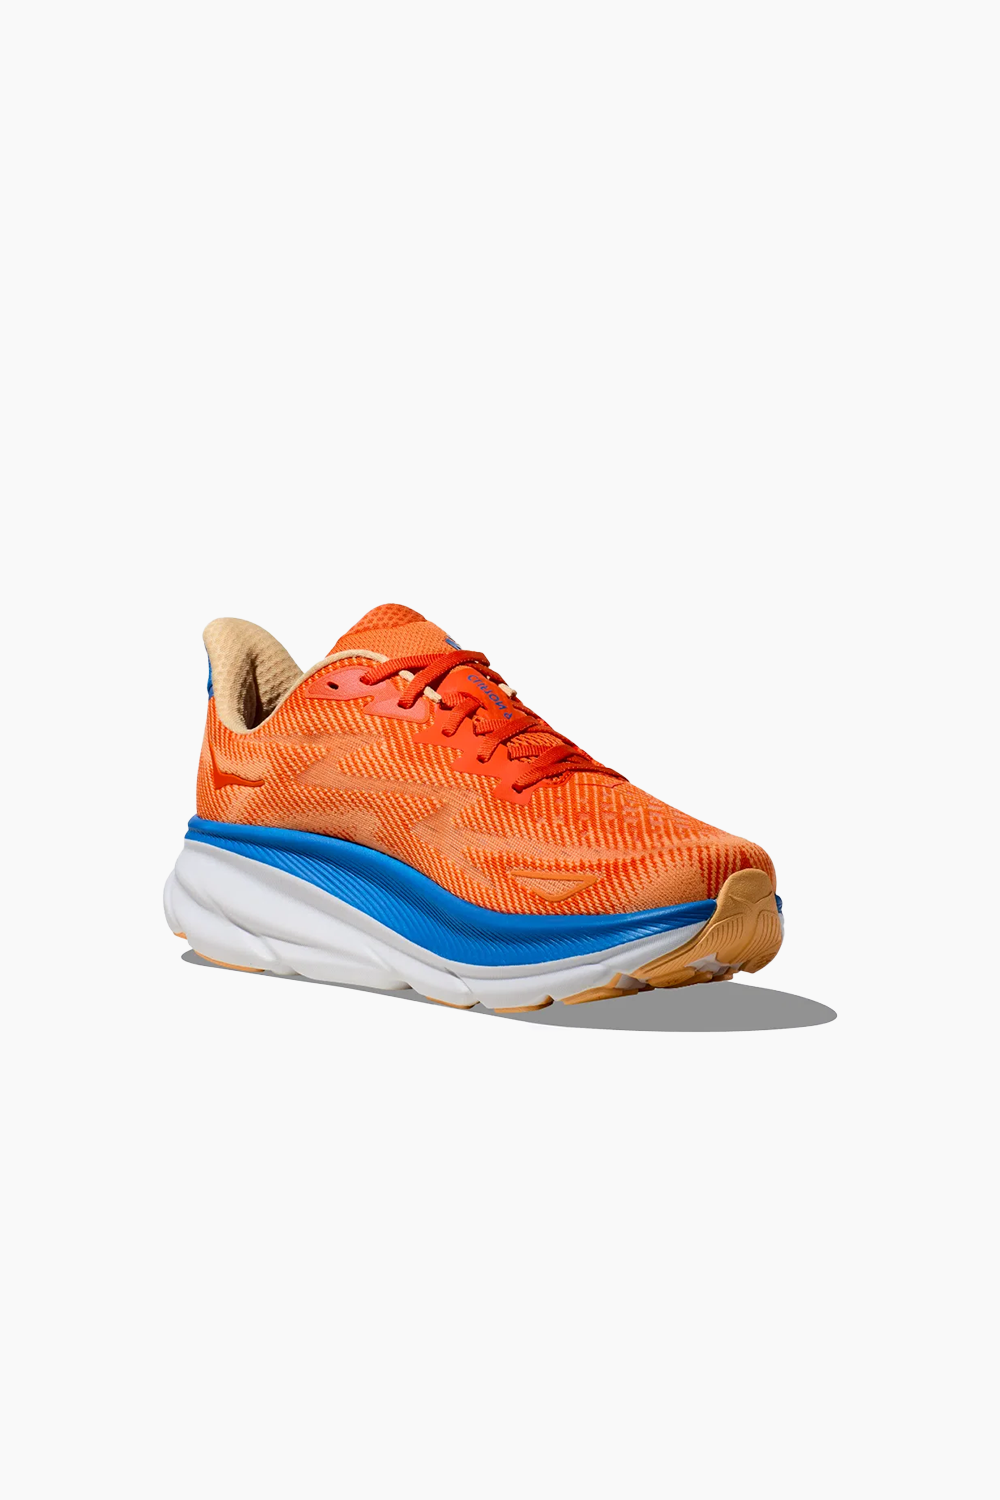 Hoka Men's Clifton 9 Sneaker in Vibrant Orange/Impala